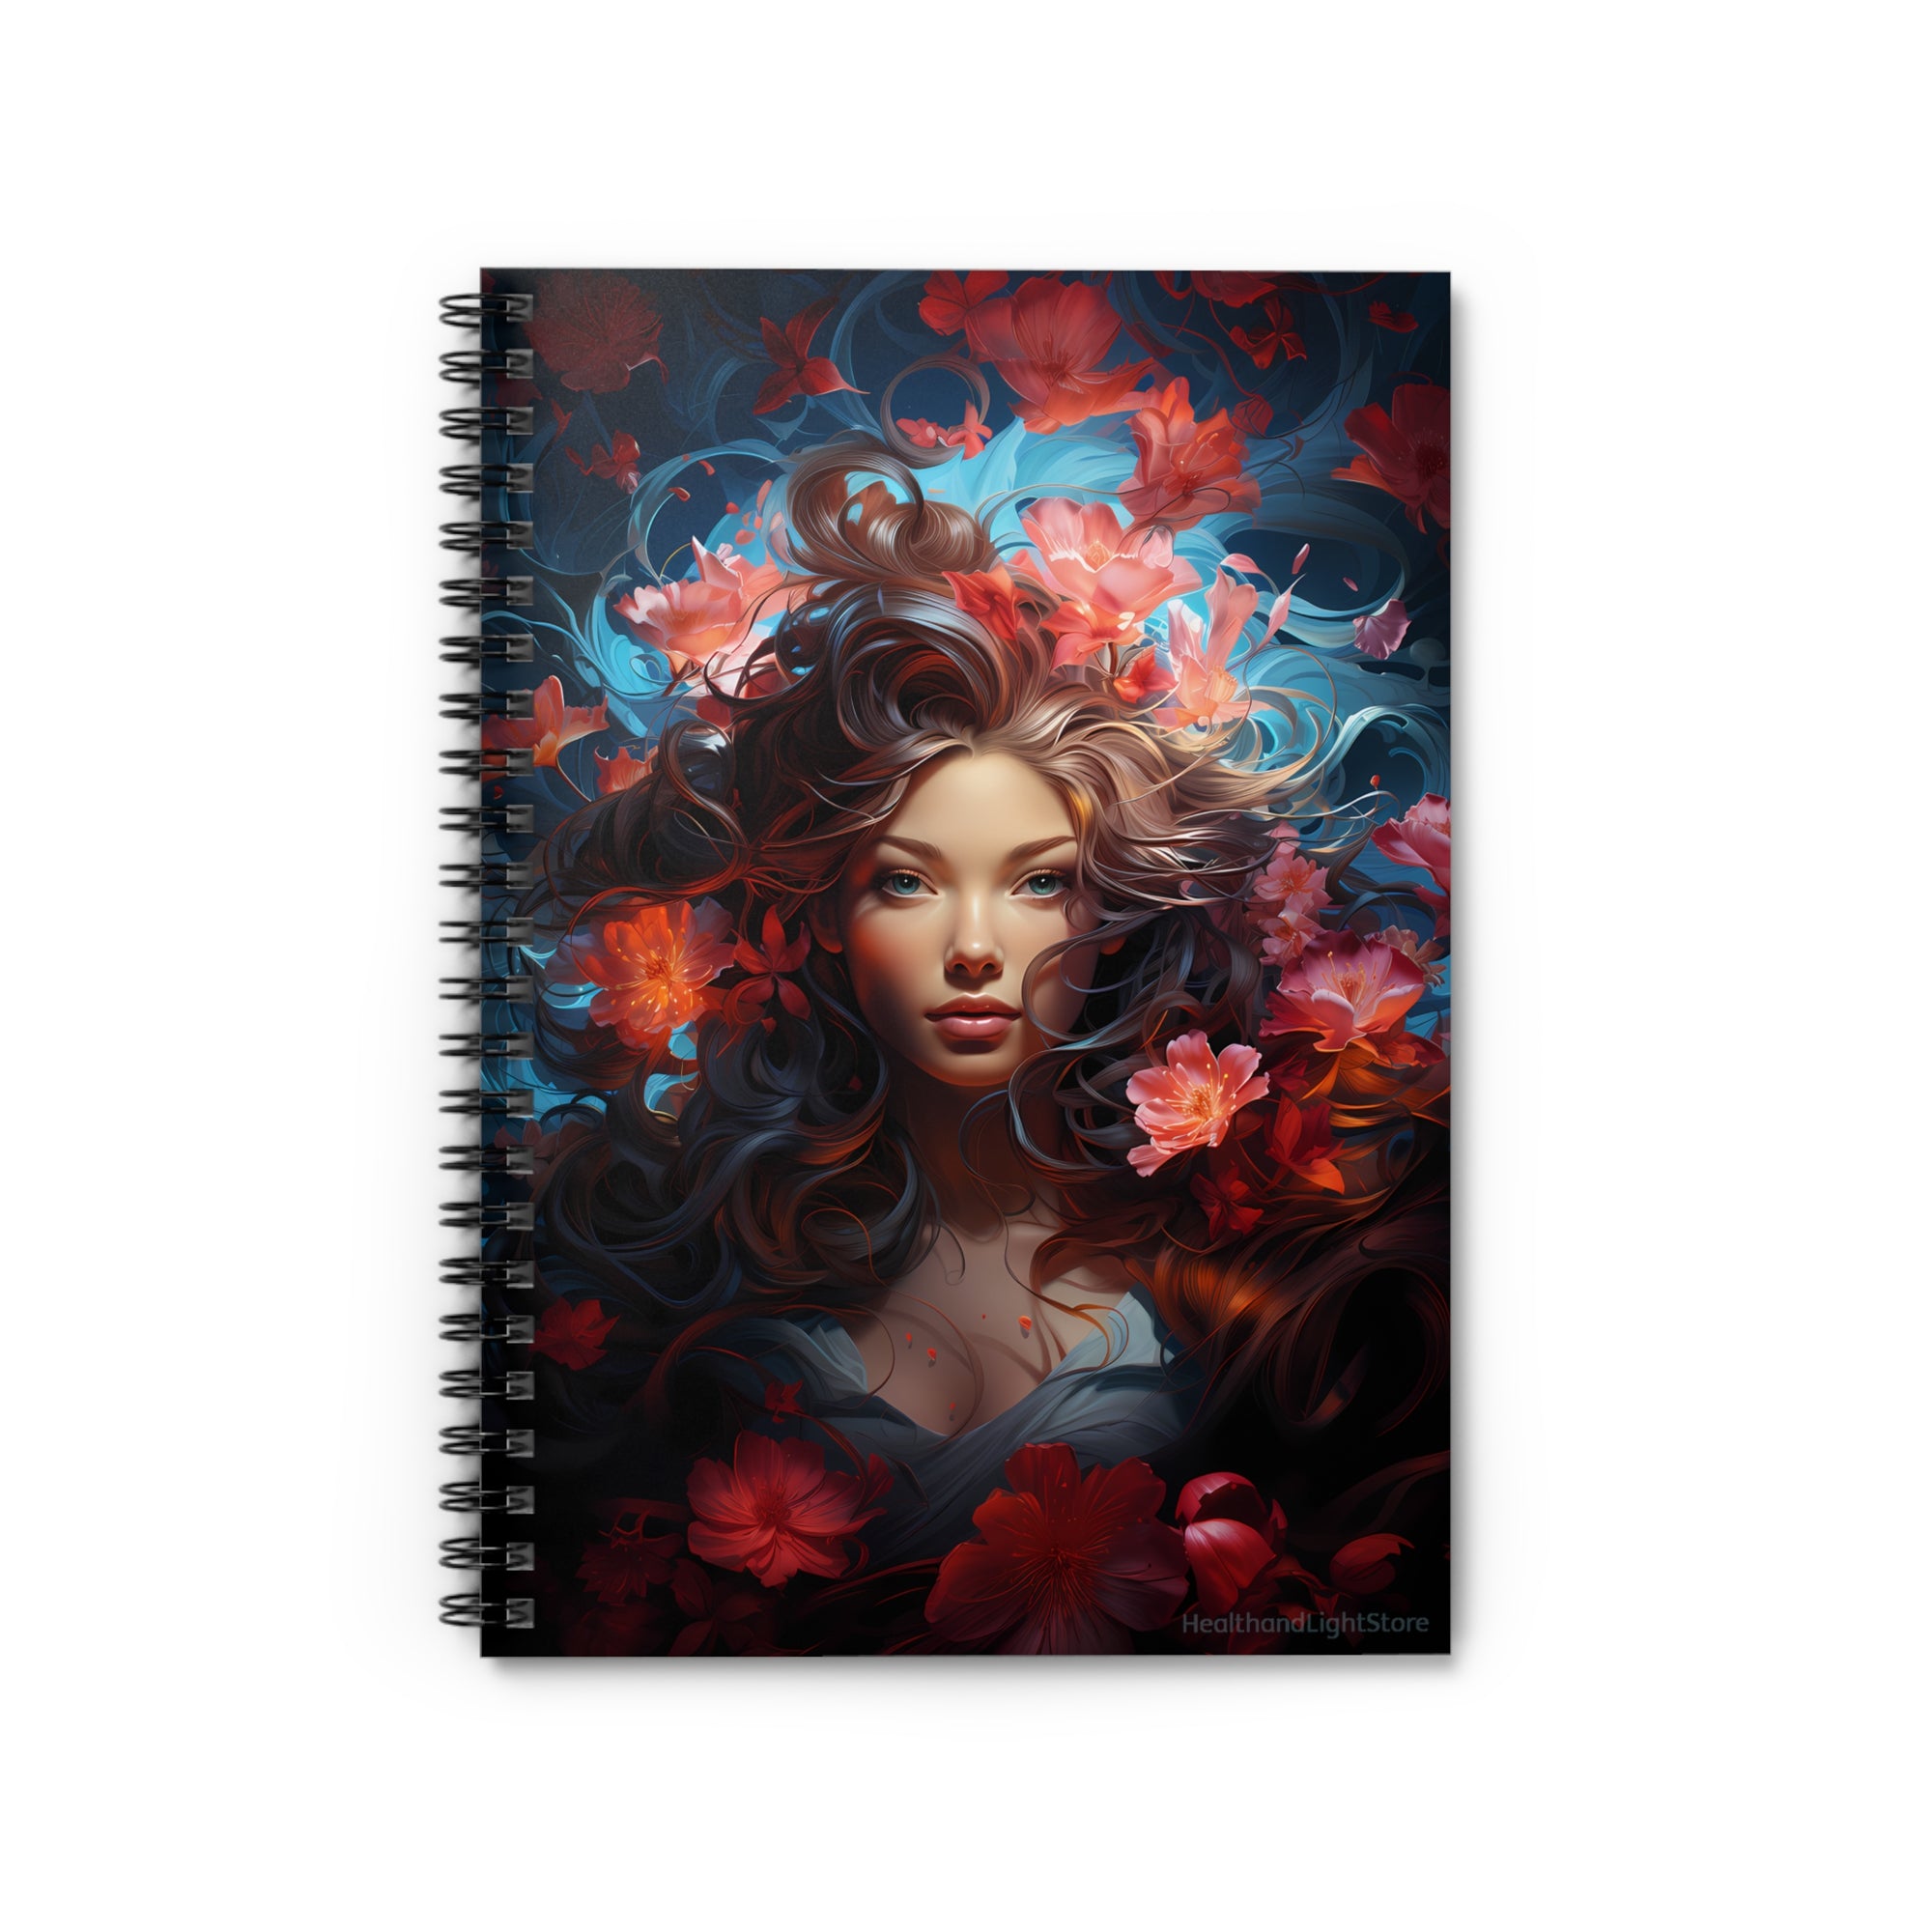 Cuaderno con líneas en espiral y diseño de diosa de las flores de sirena, tapa blanda #6 